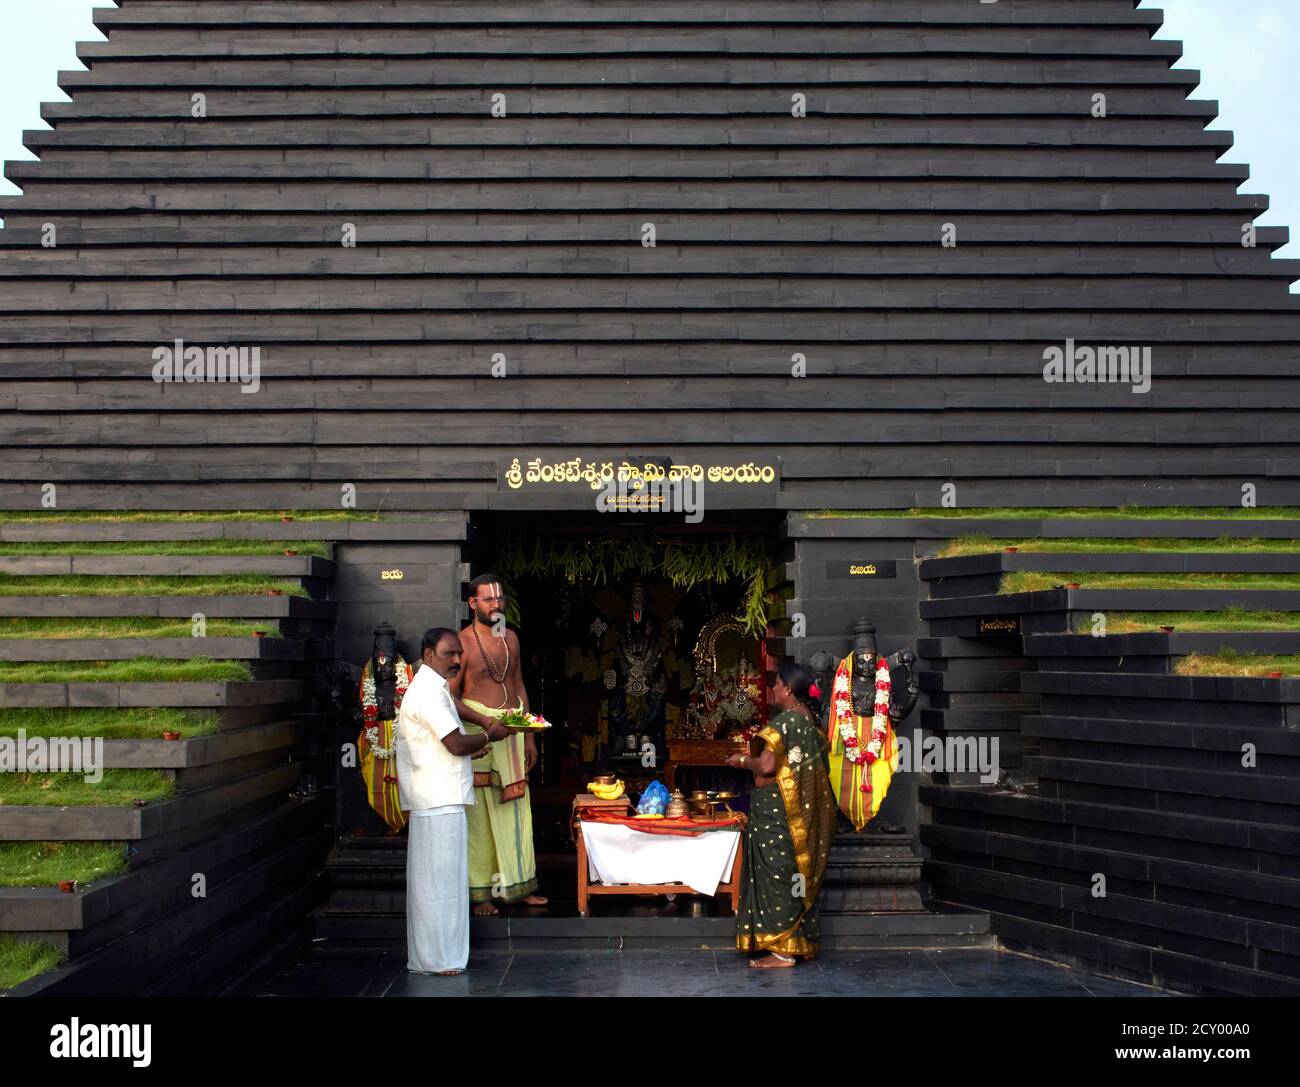 Gesamtansicht mit Priester. Balaji-Tempel, Andhra Pradesh, Indien. Architekt: Sameep Padora und Mitarbeiter , 2020. Stockfoto